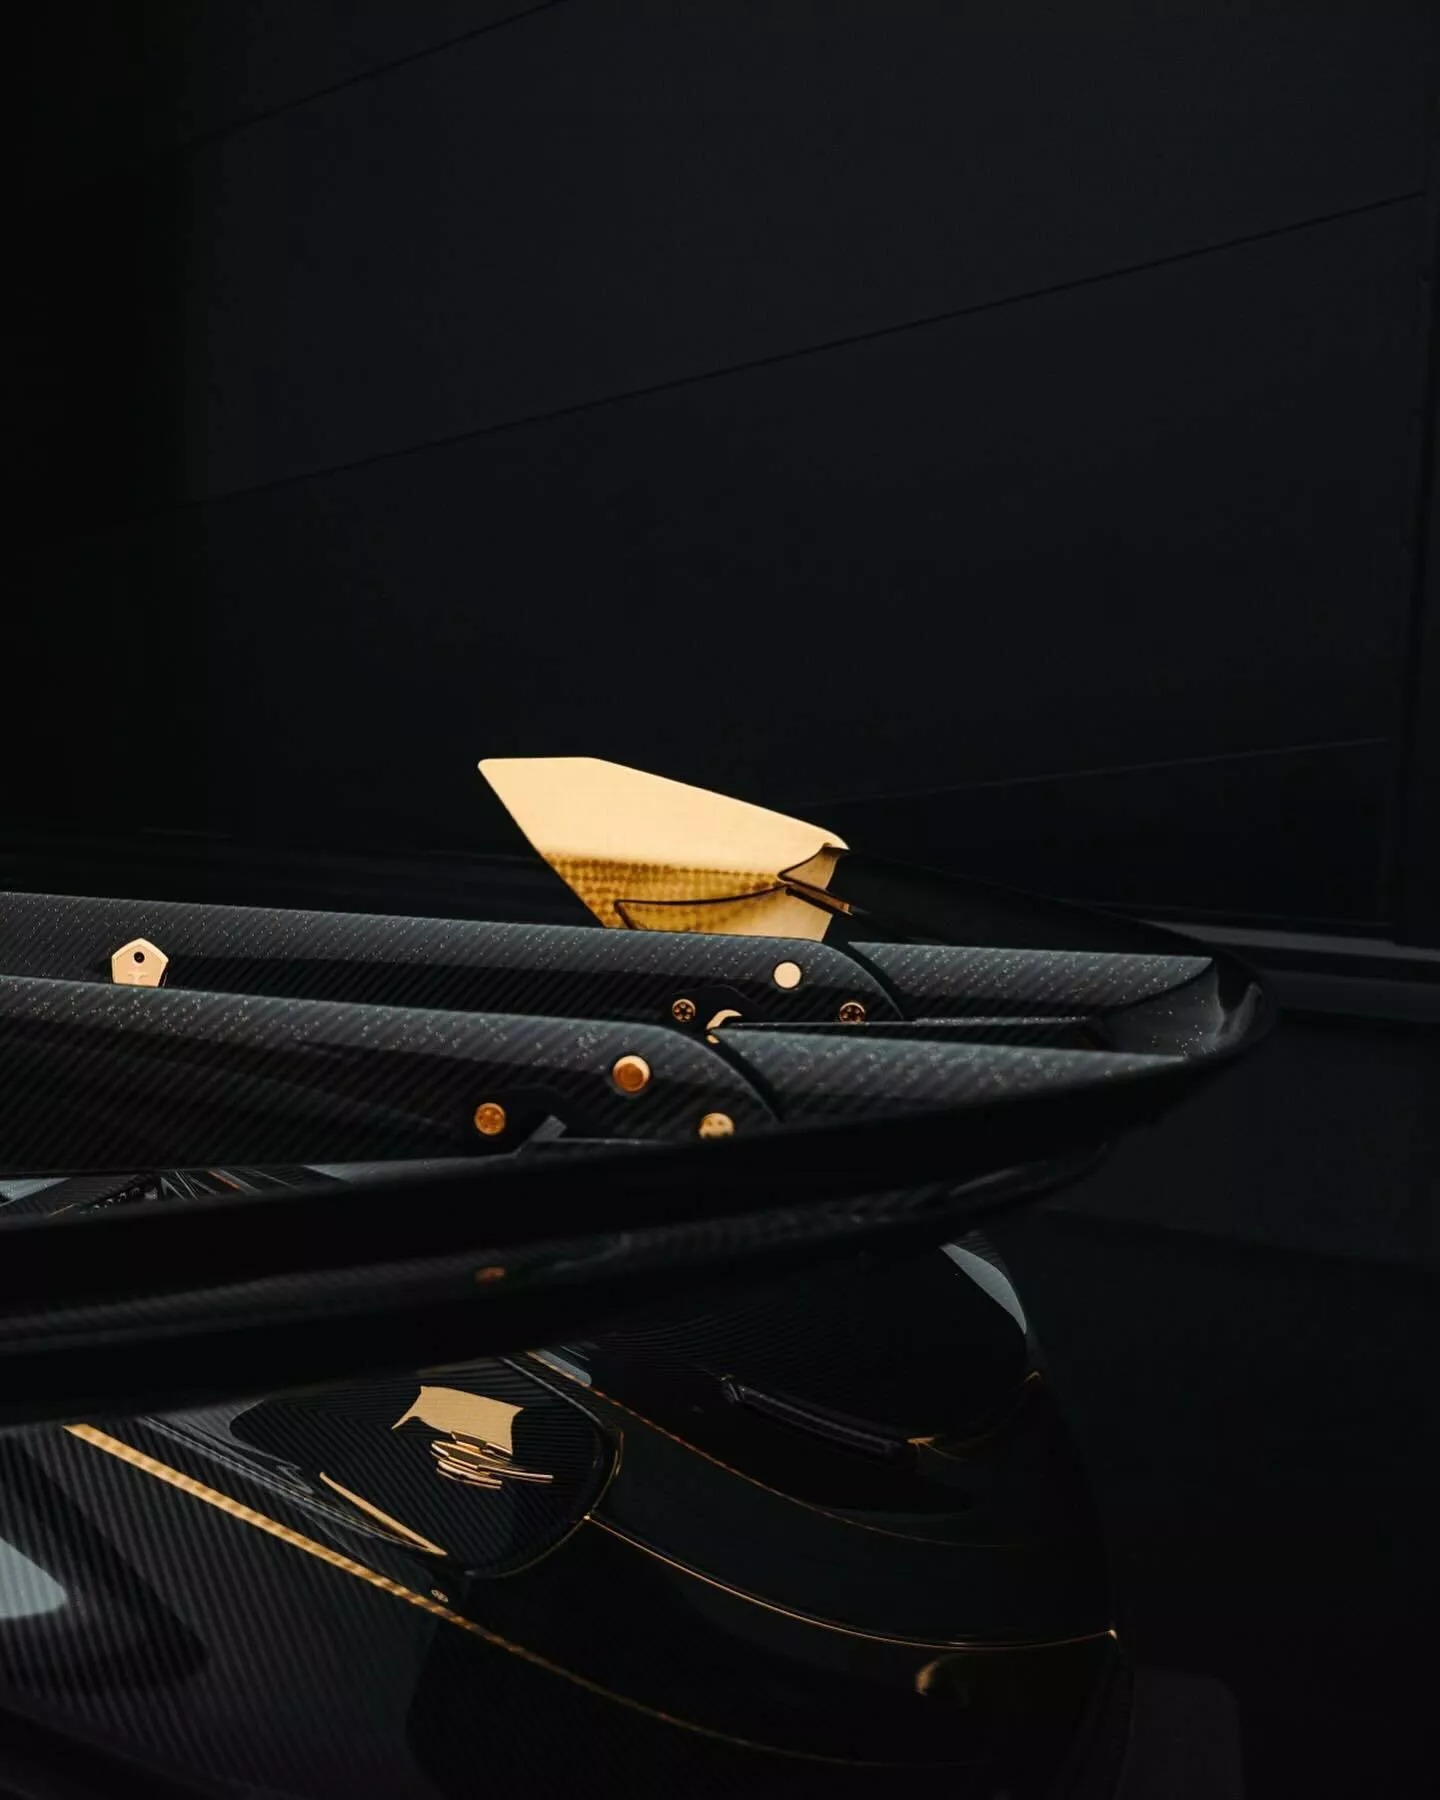 Đại gia bất động sản chơi siêu xe Koenigsegg khác người: Rắc bột vàng lên khắp vỏ carbon, mạ vàng 24k nhiều chi tiết ngoại thất- Ảnh 10.